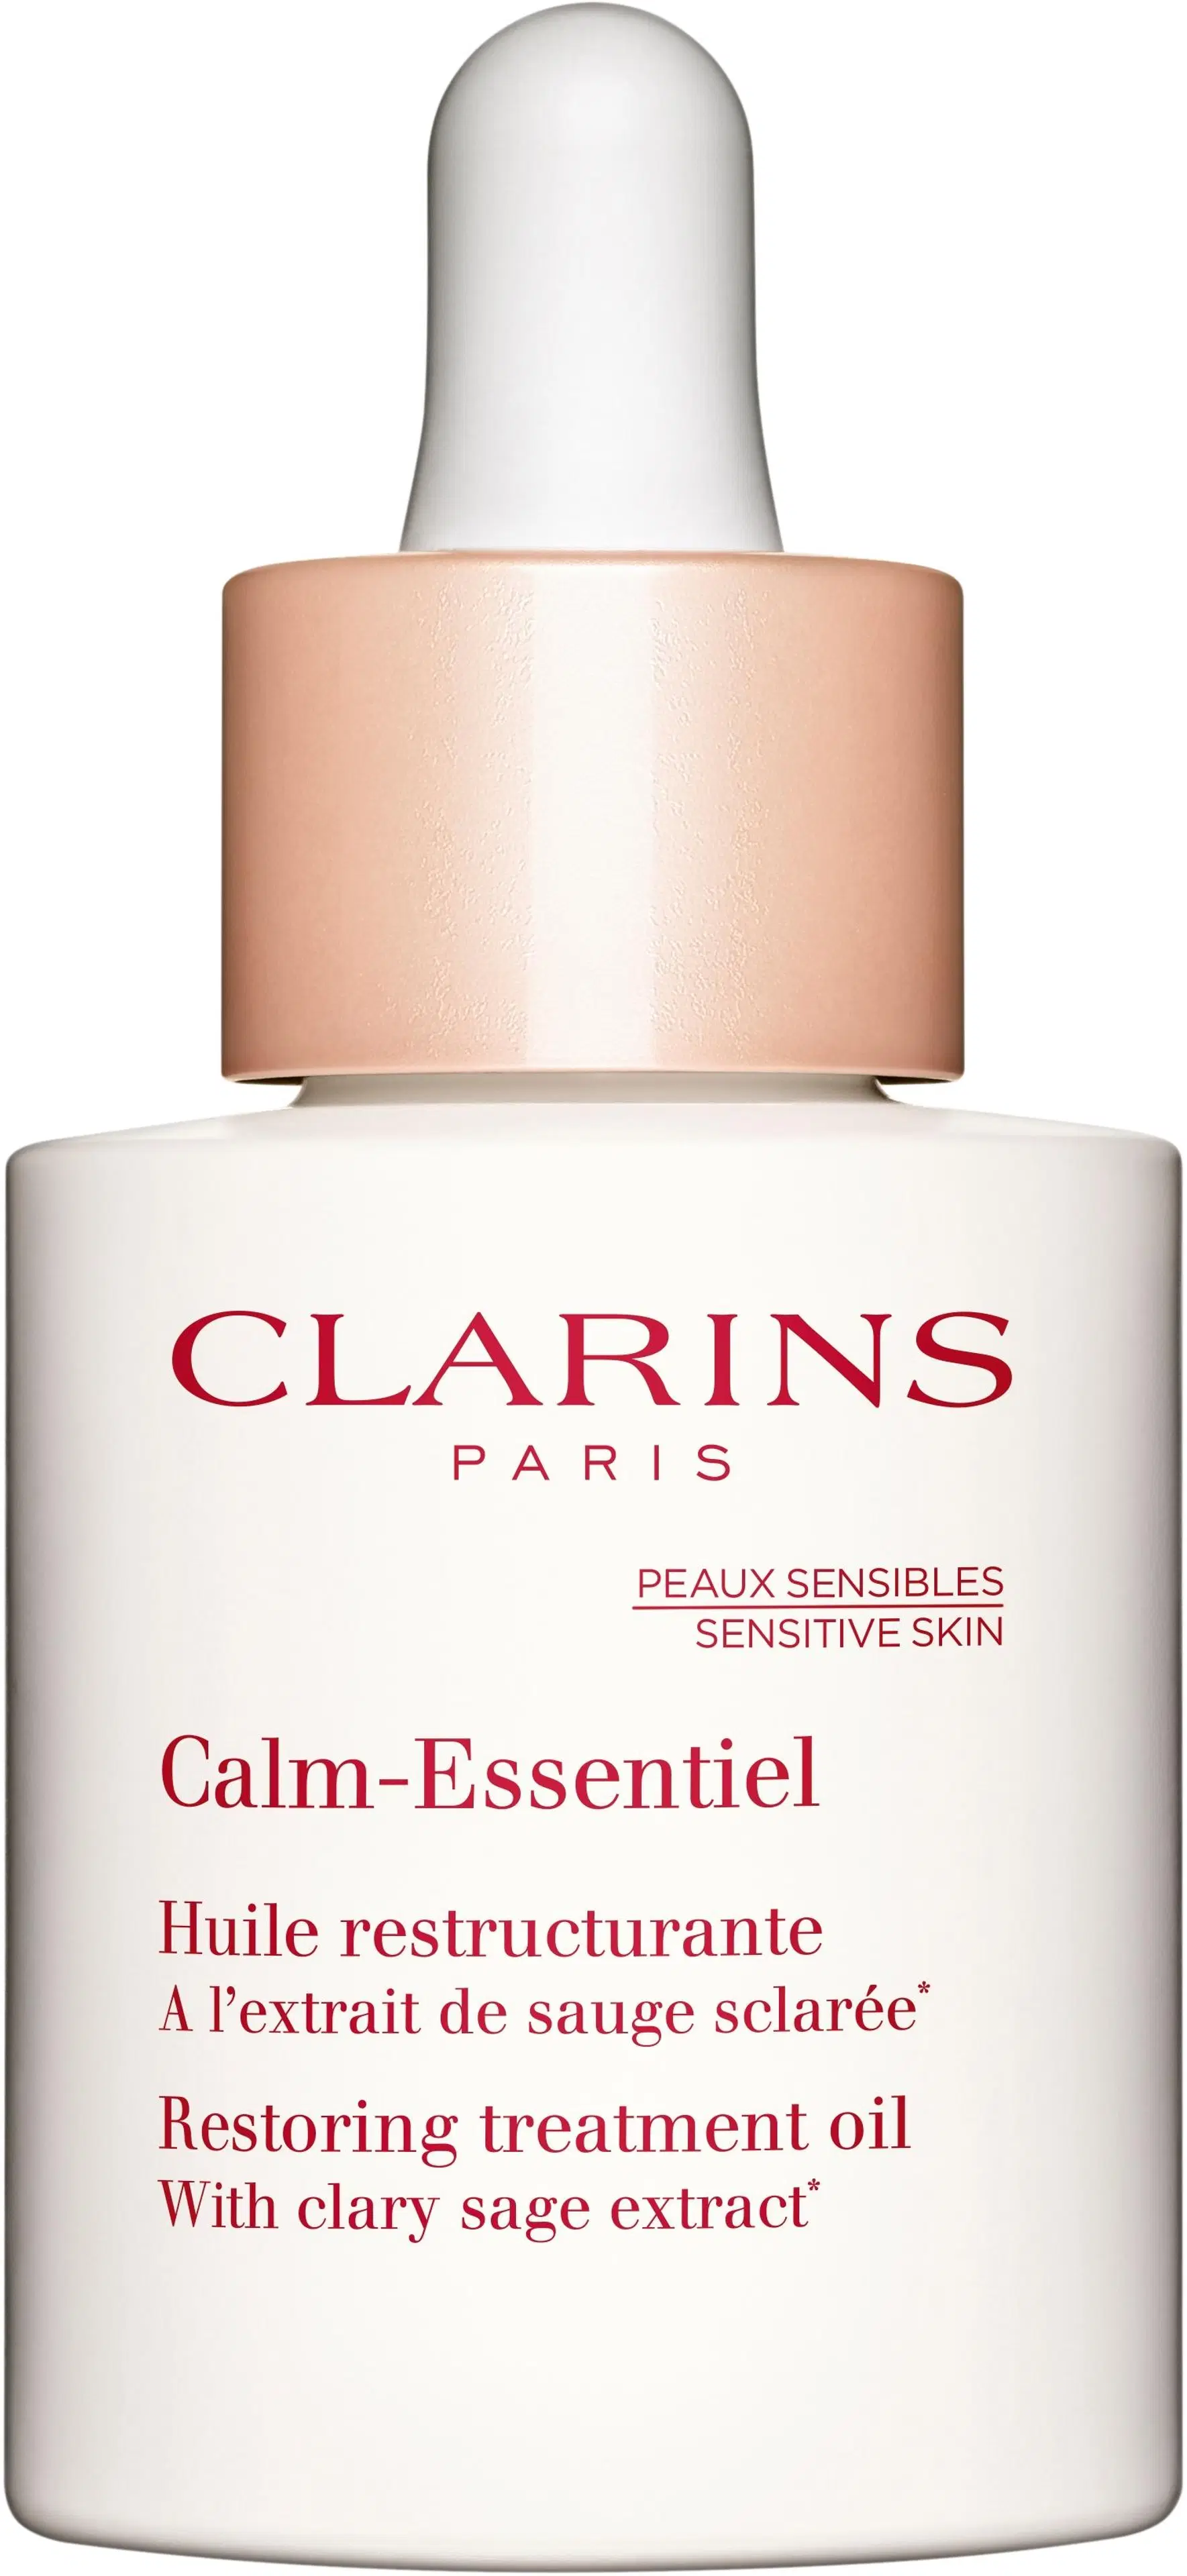 Clarins Calm-Essentiel Restoring Treatment Oil hoitoöljy 30 ml